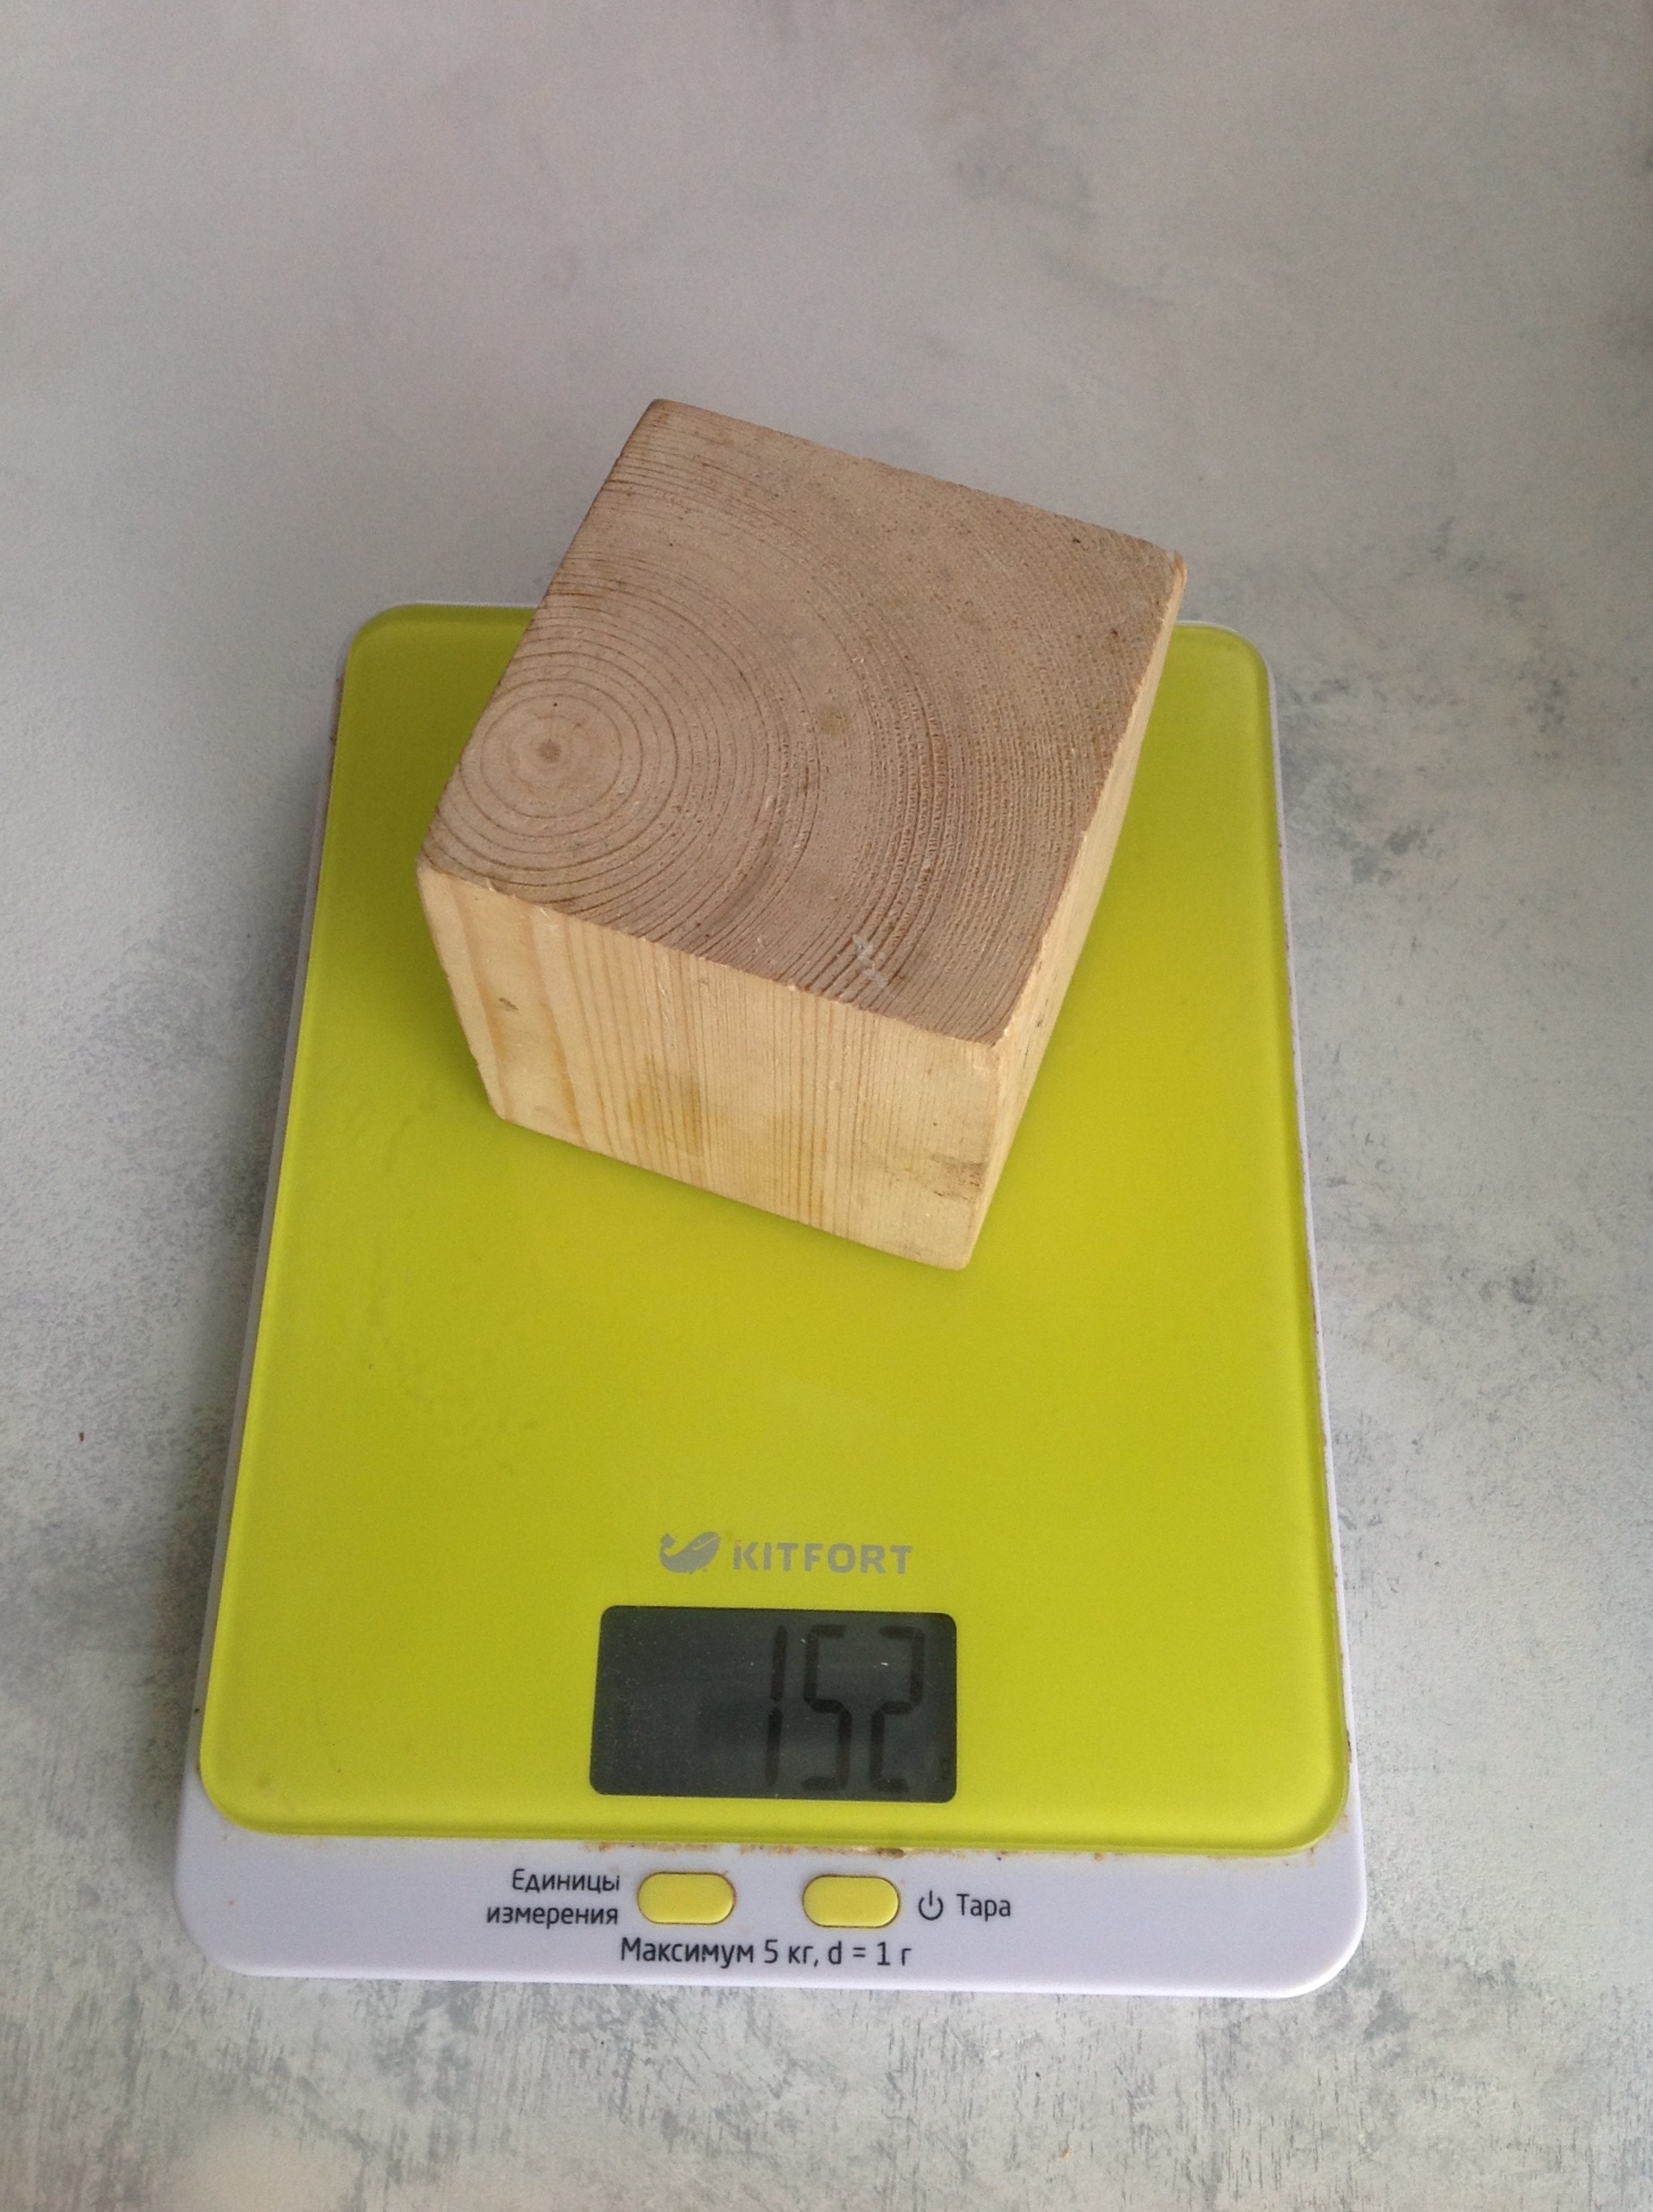 Gewicht eines großen Holzwürfels